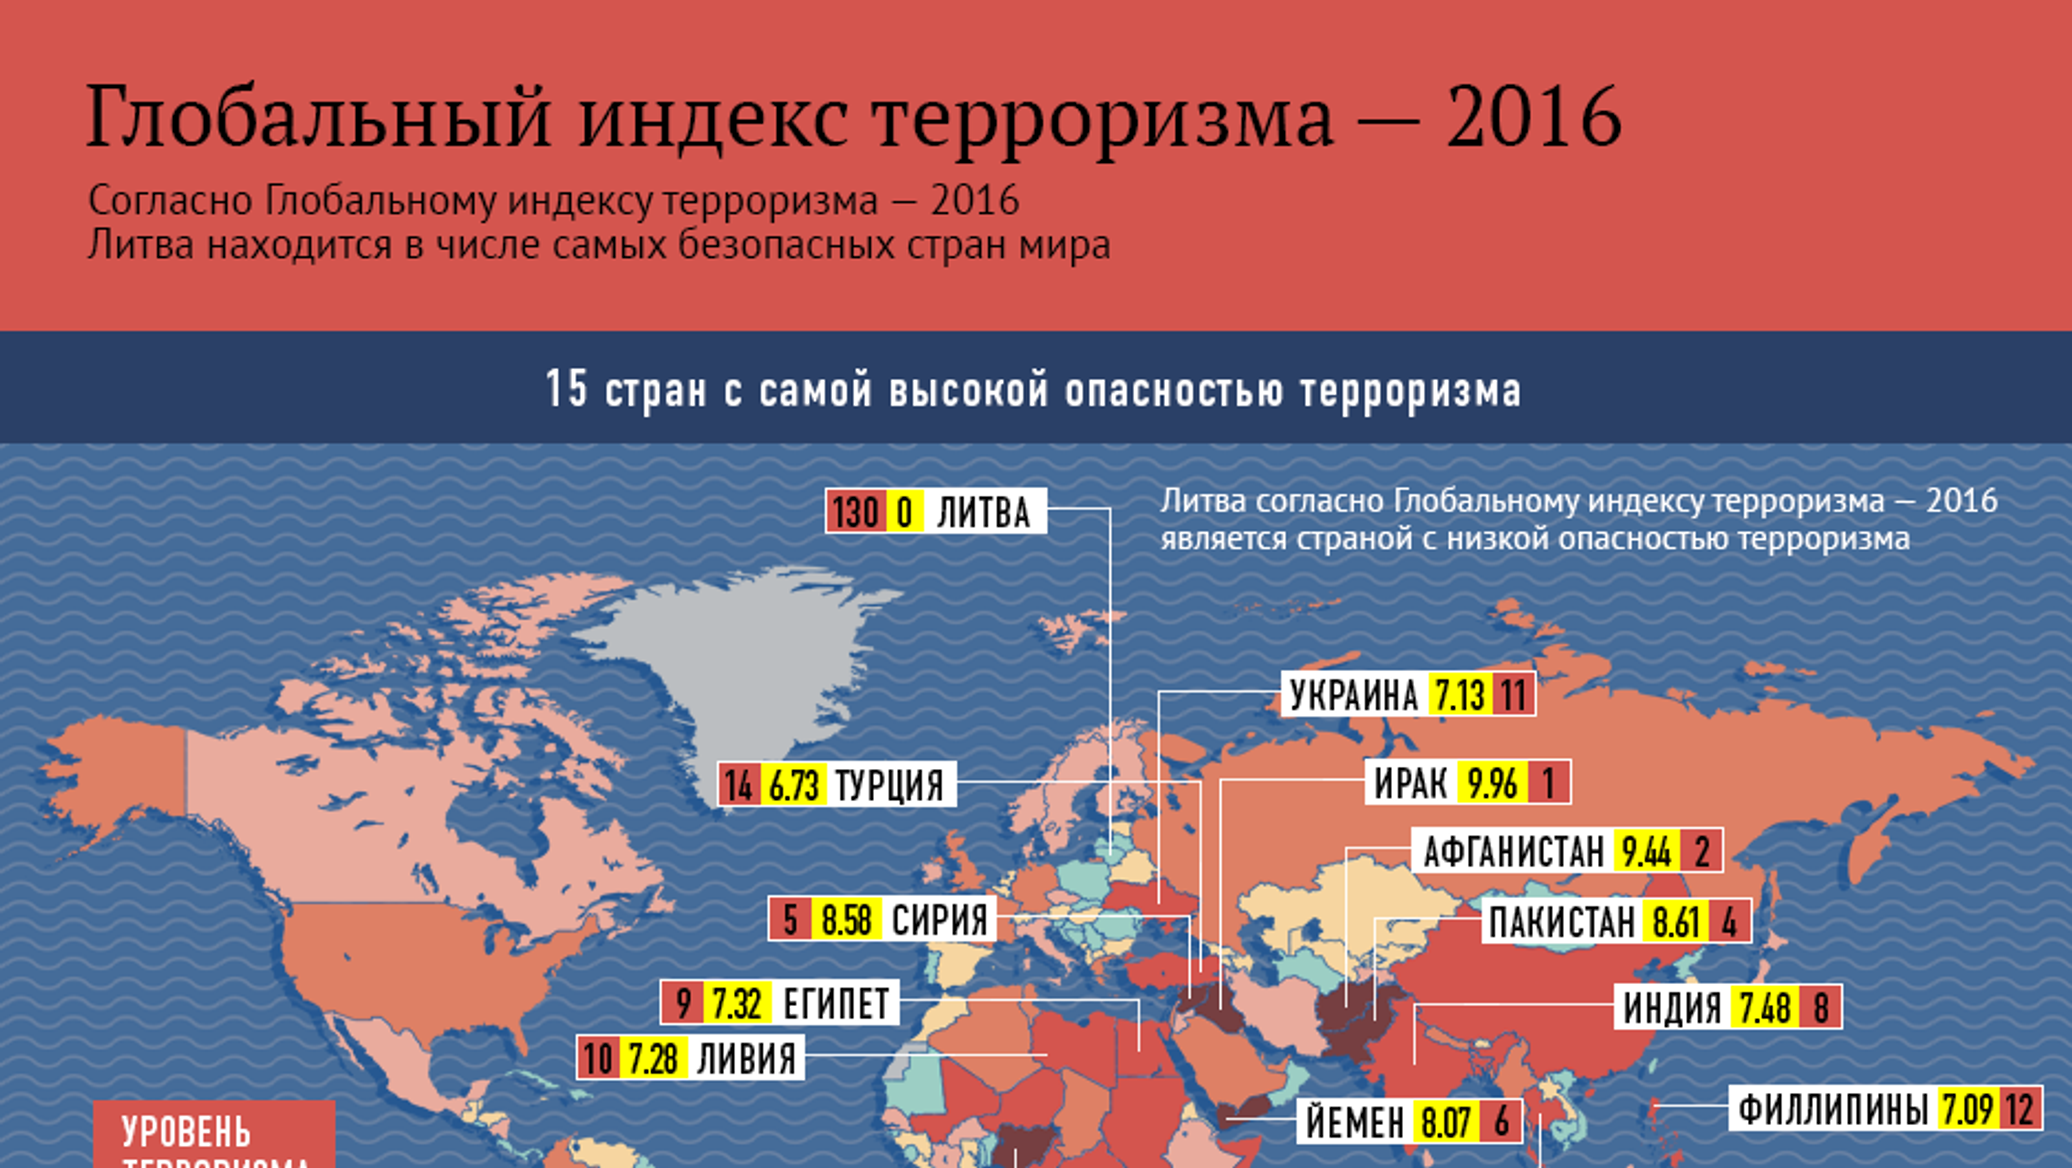 Список терактов за последние 10 лет. Рейтинг стран по уровню терроризма. Статистика преступности по странам.